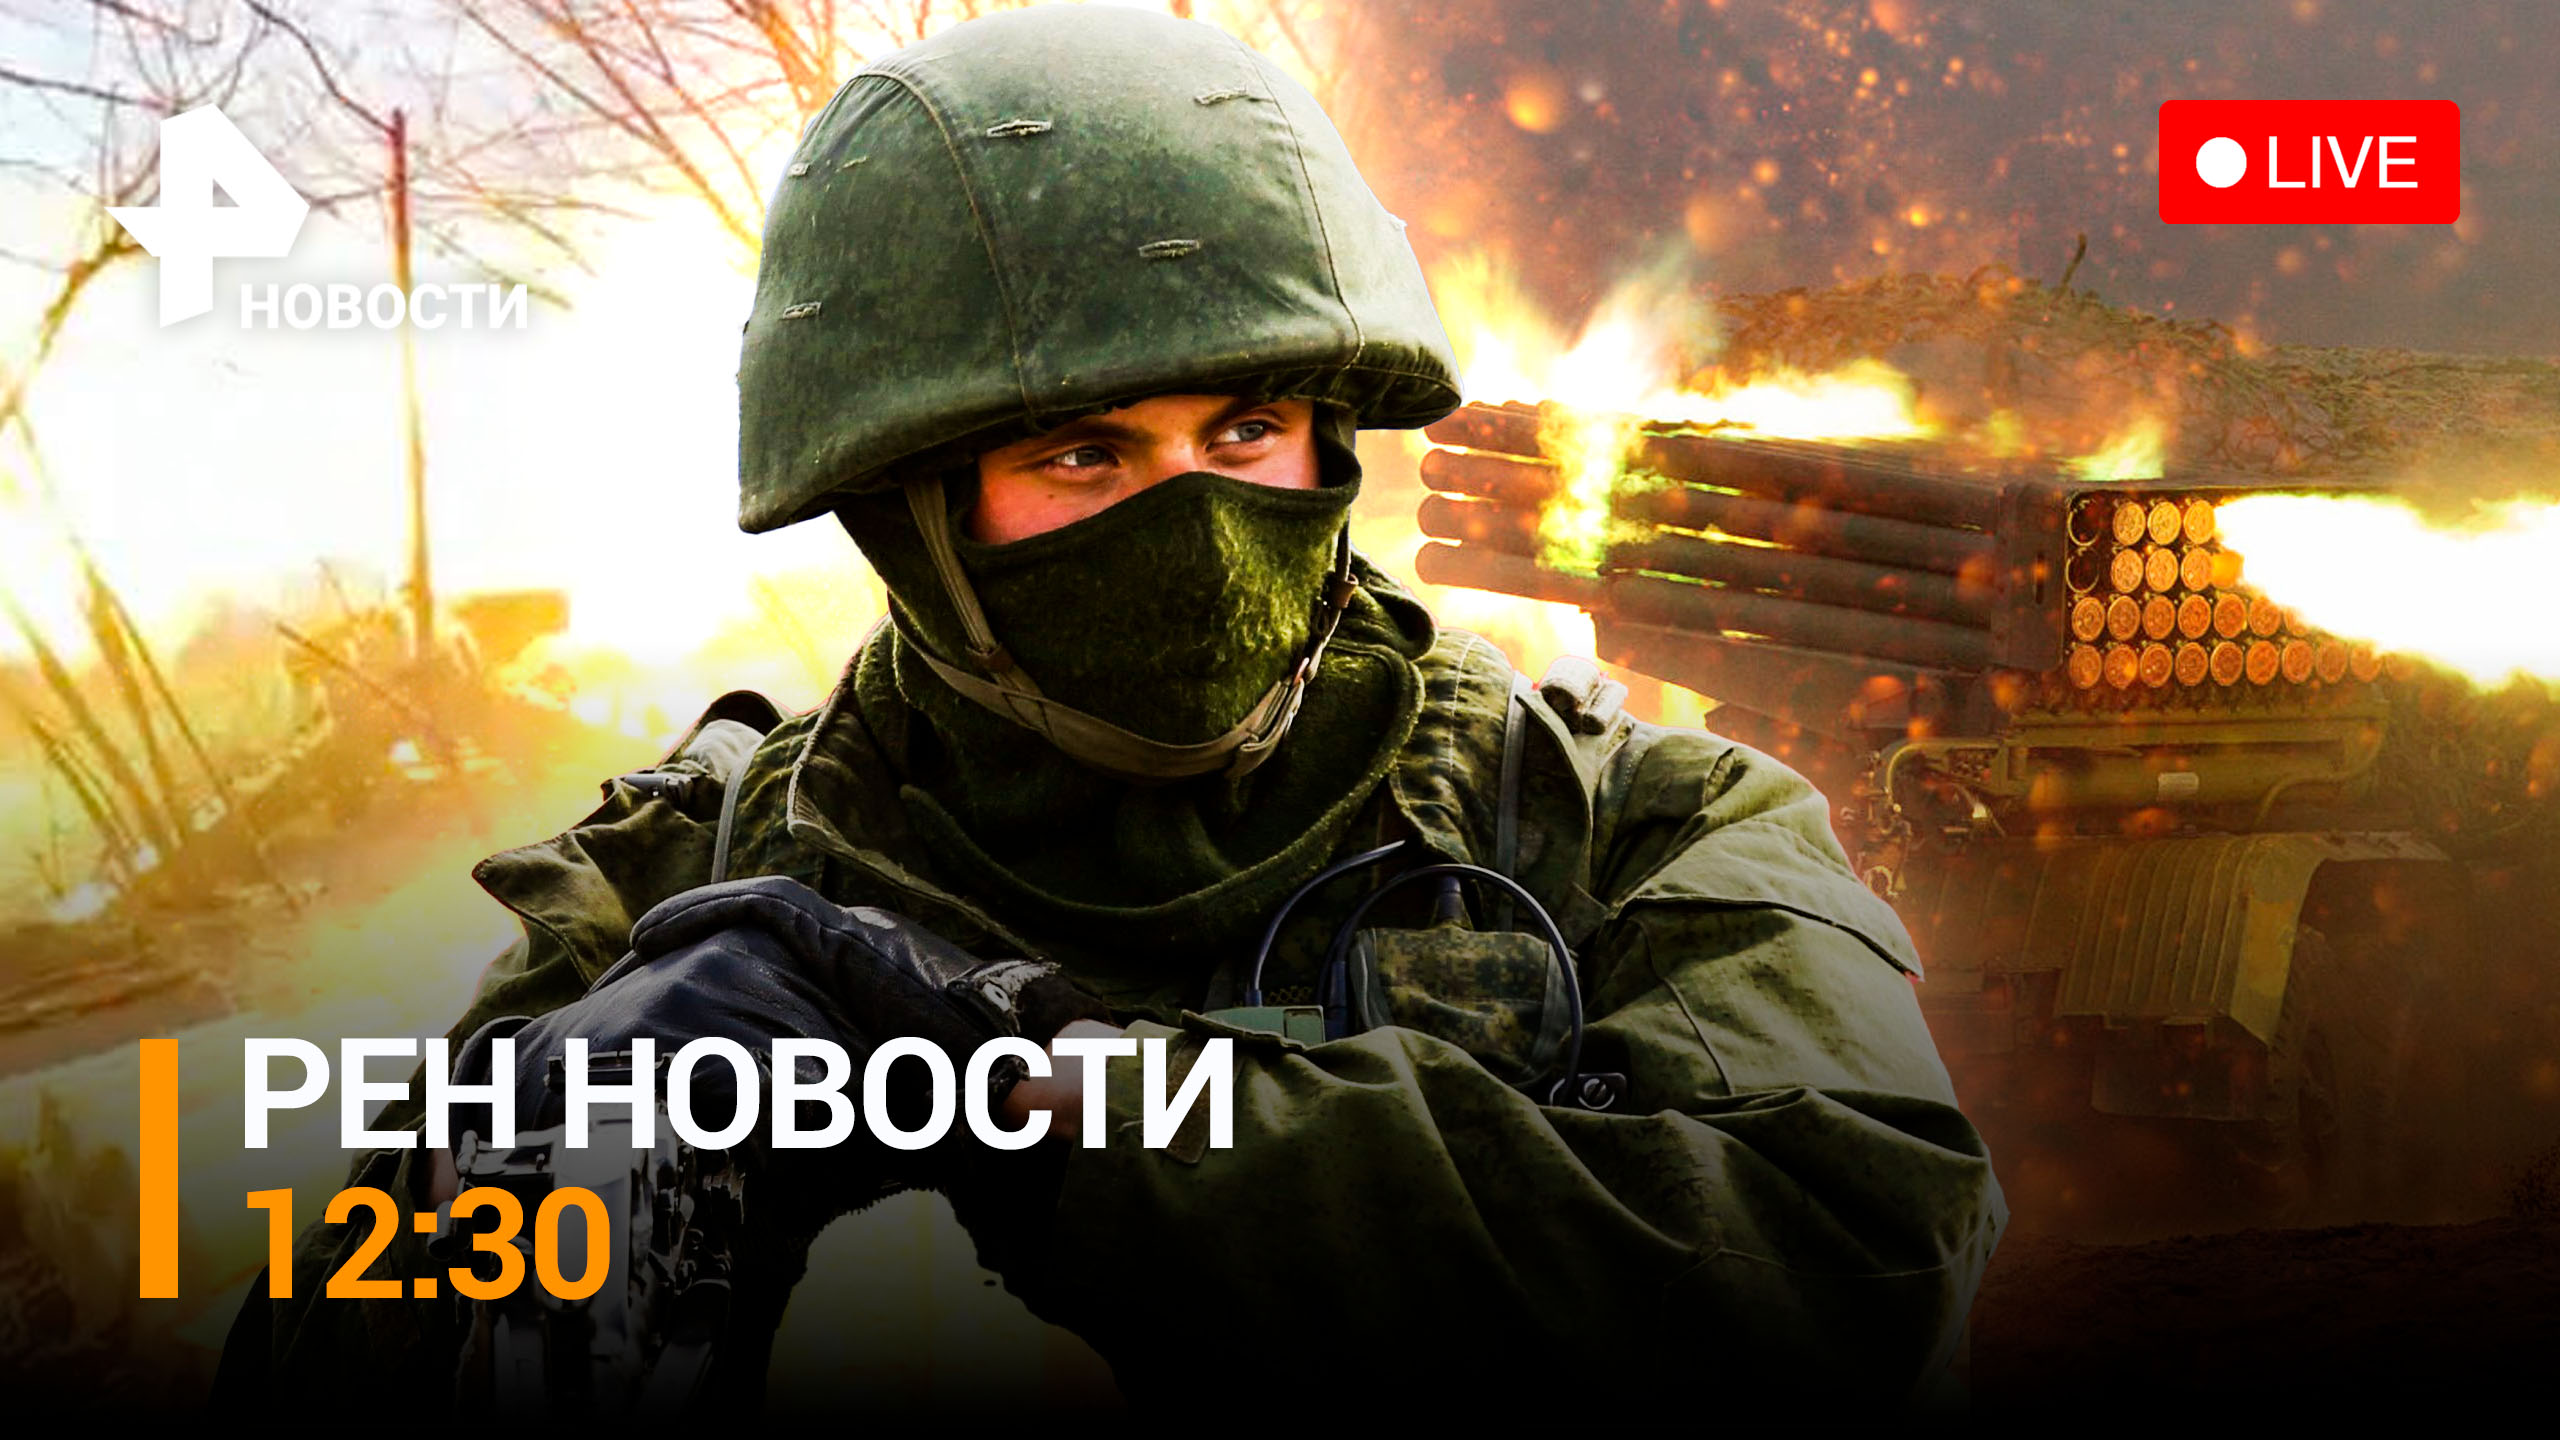 Битва за Марьинку - как "Грады" поддерживают наступление / РЕН ТВ НОВОСТИ 12:30 от 23.01.2023